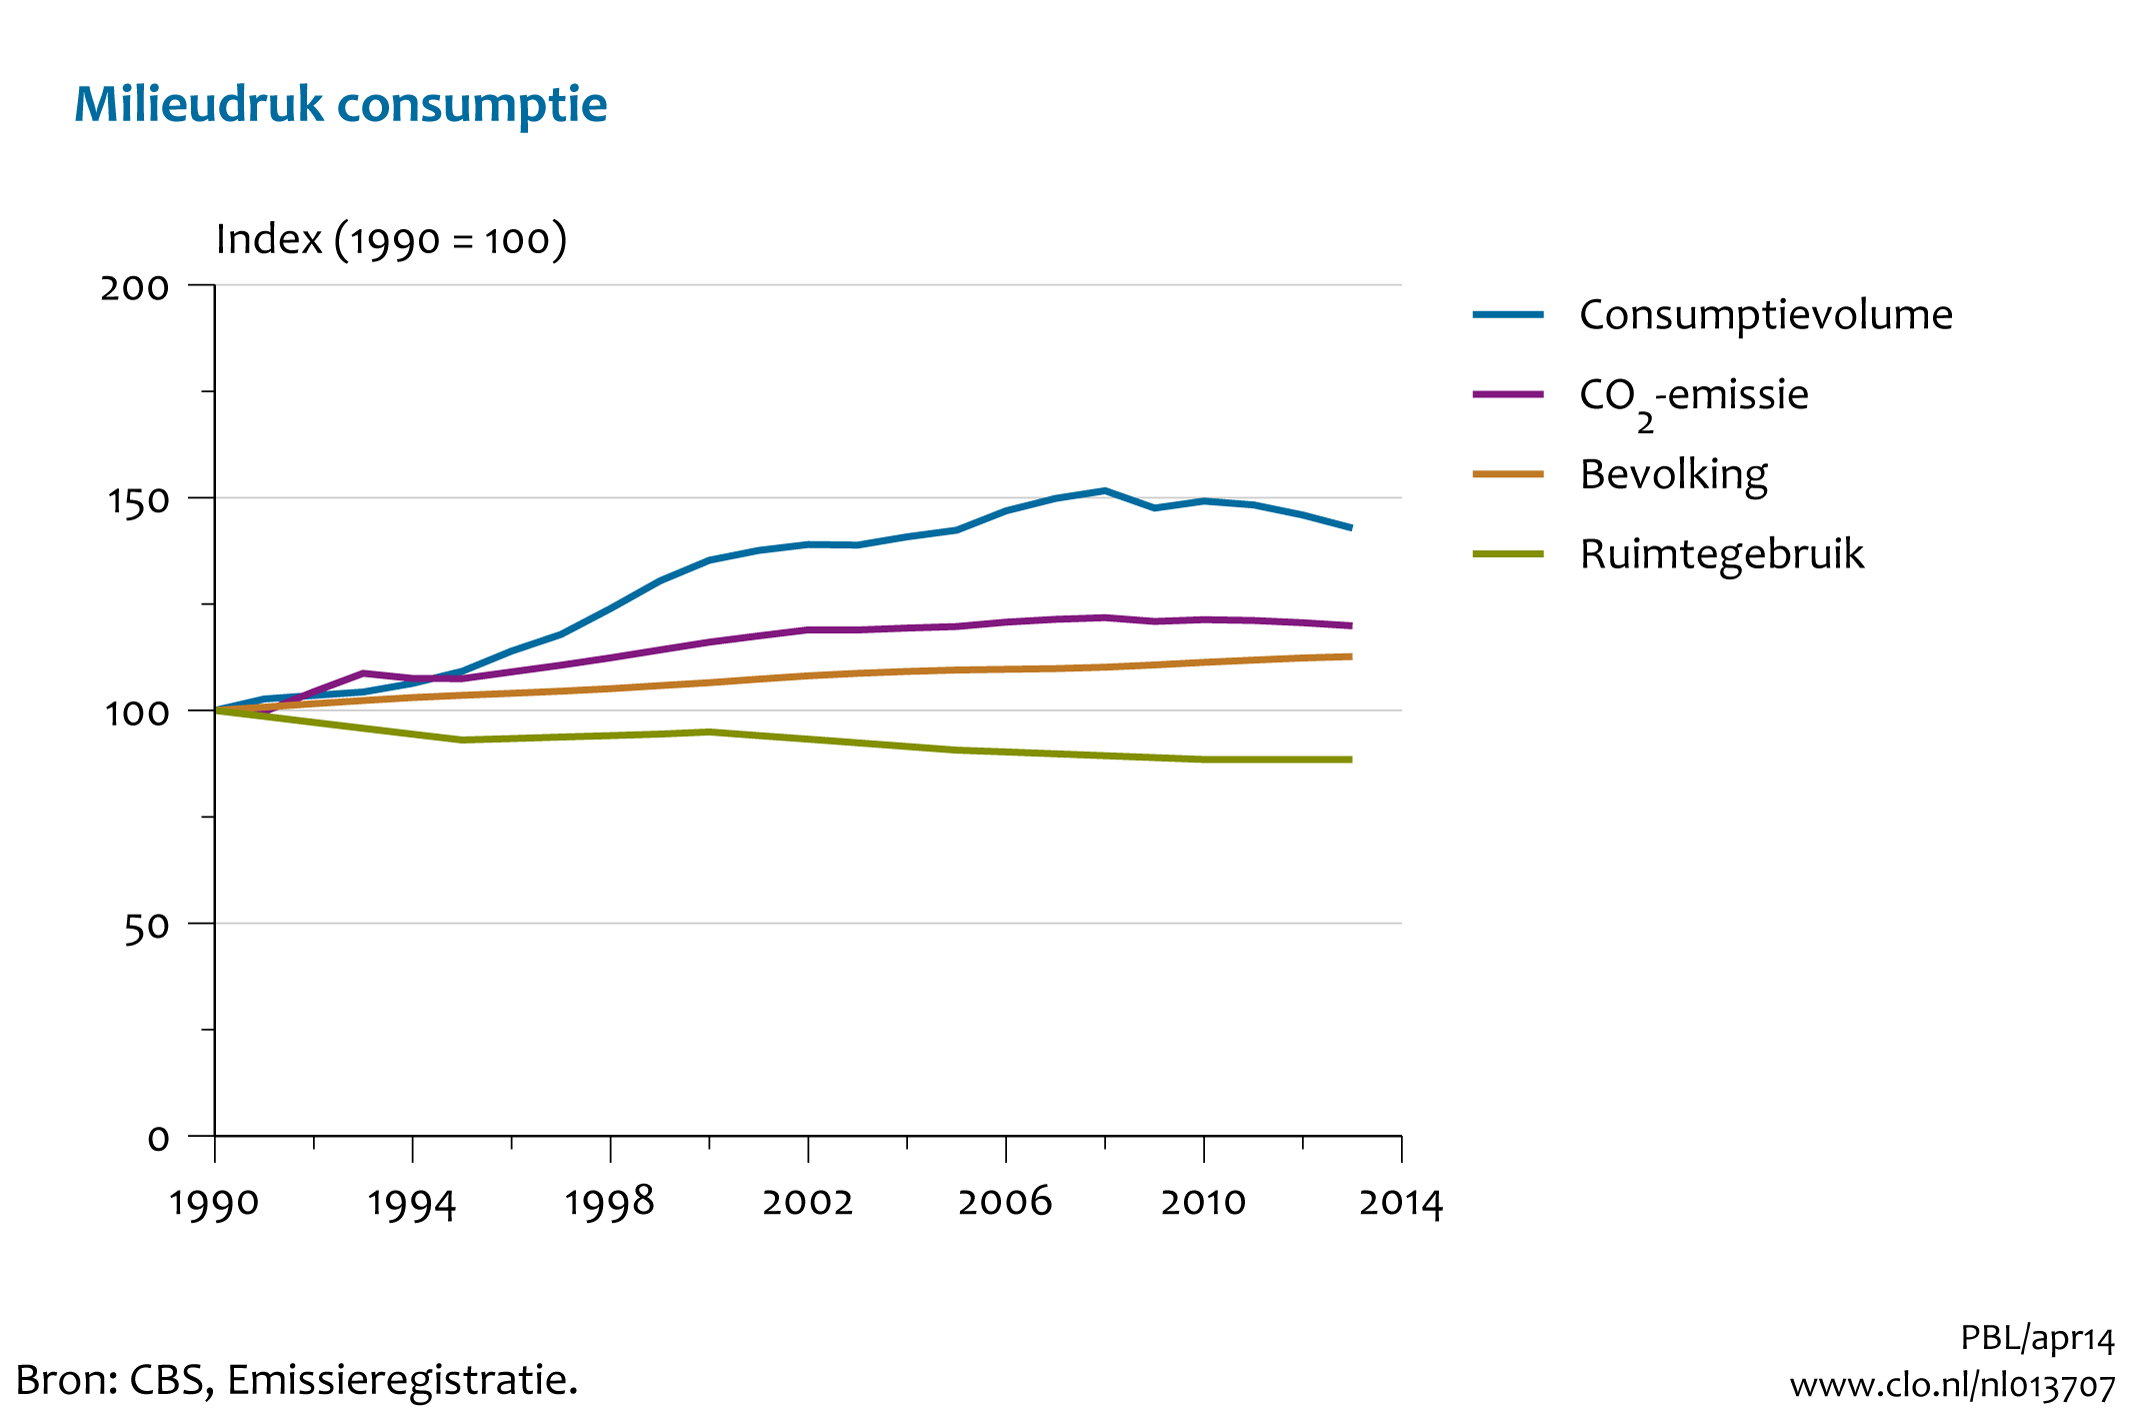 Figuur Index van consumptievolume, CO2-emissie, ruimtegebruik en bevolkingsgroei sinds 1990. In de rest van de tekst wordt deze figuur uitgebreider uitgelegd.